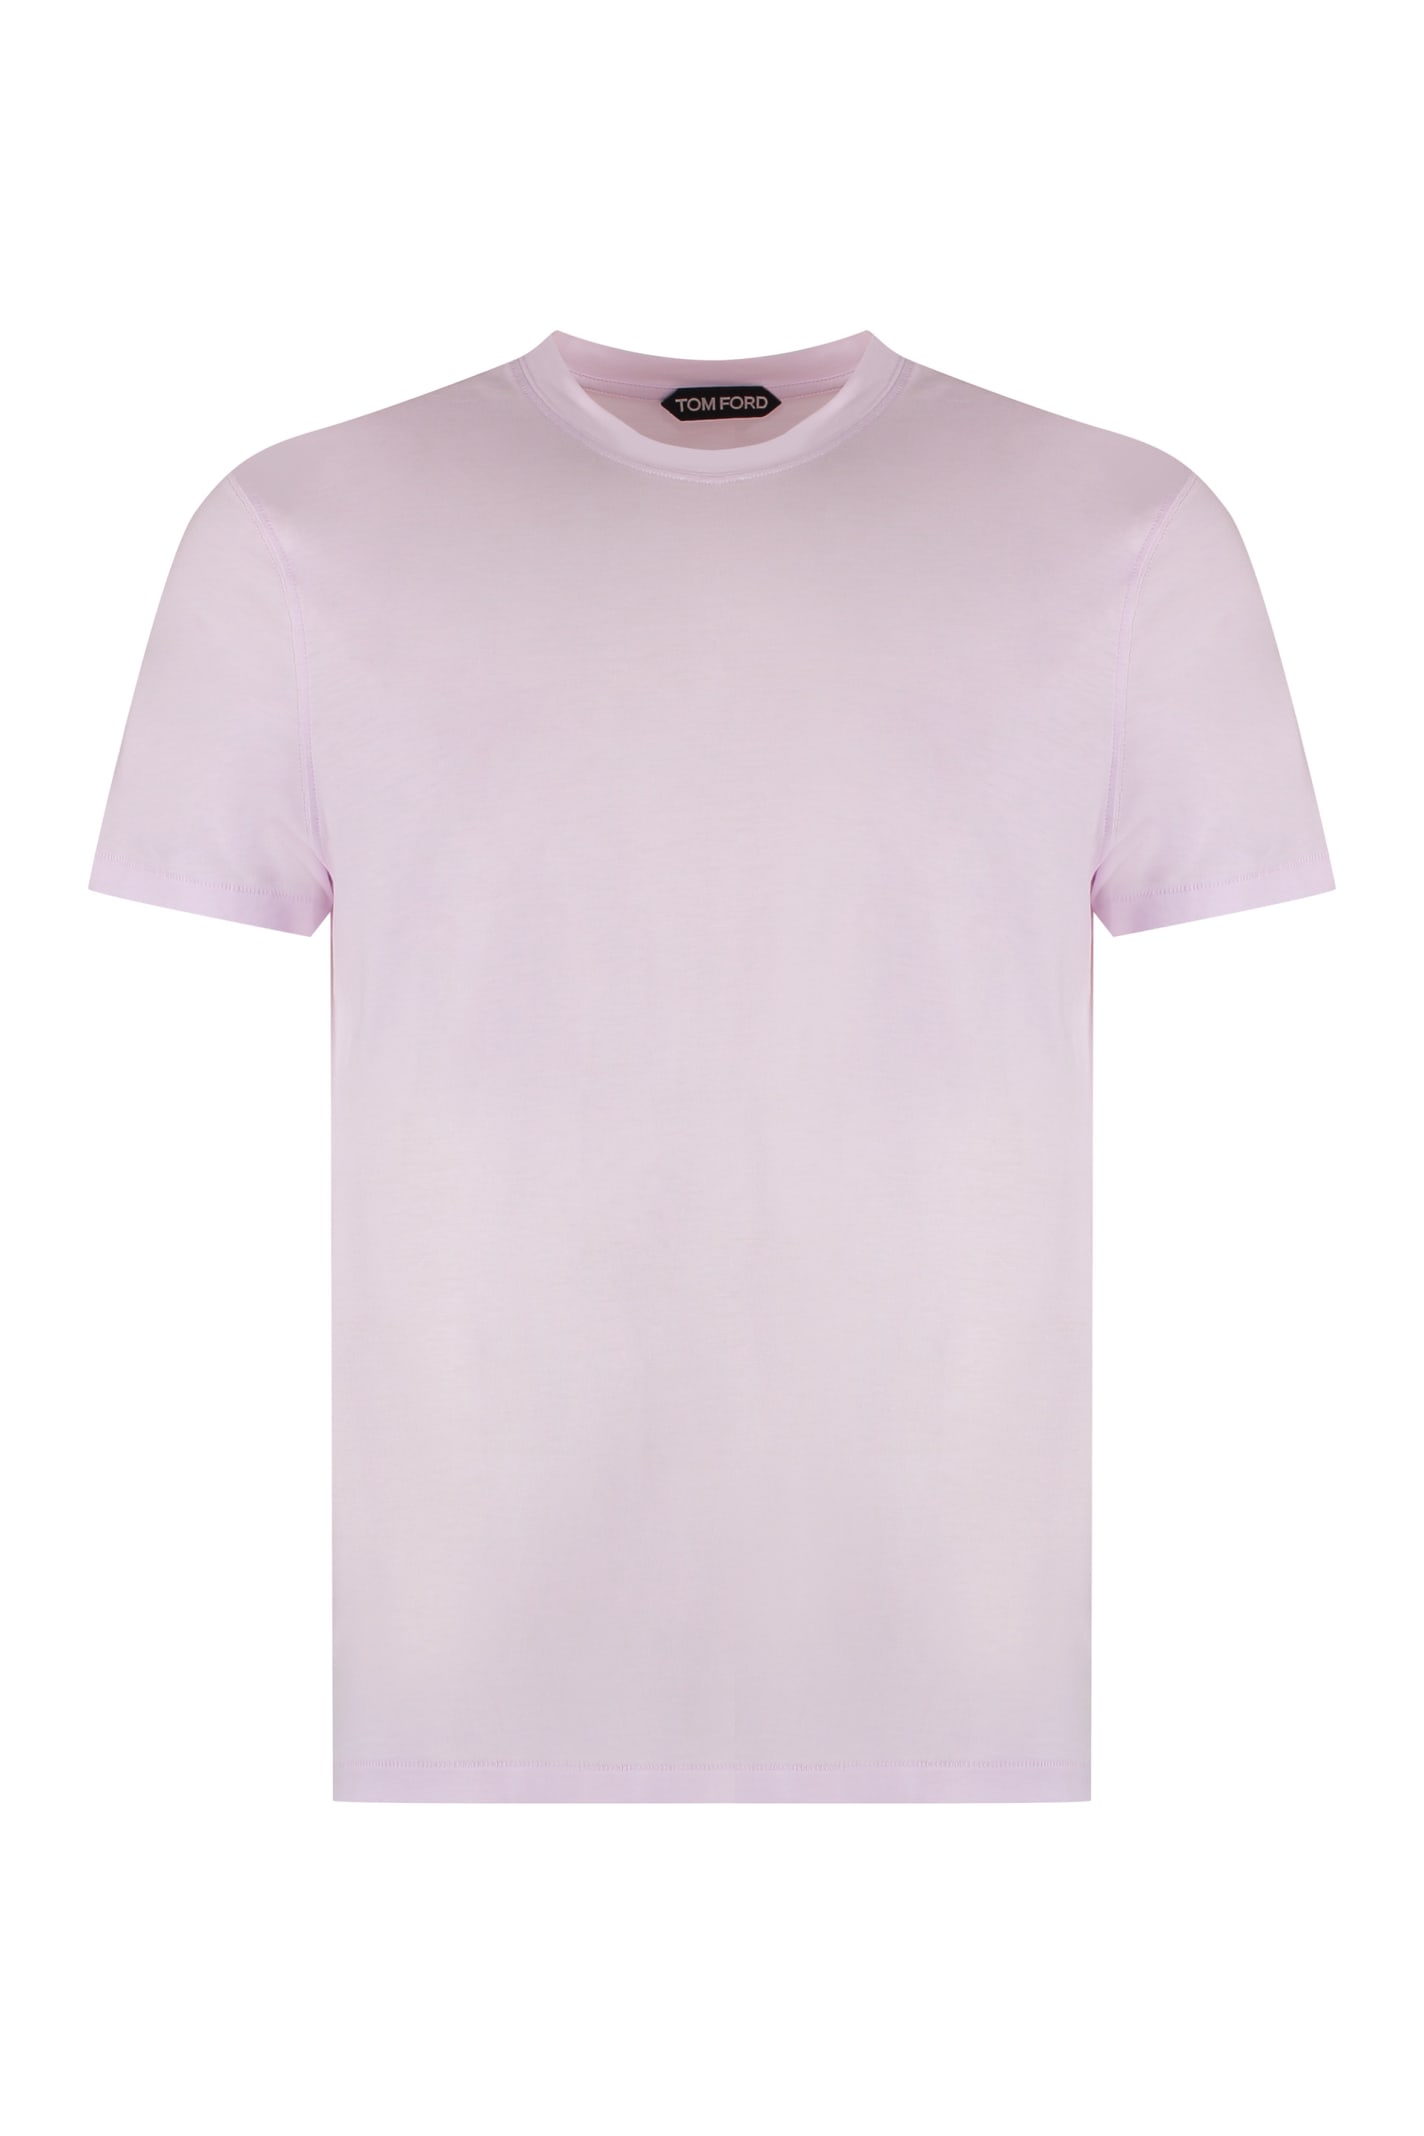 Cotton Blend T-shirt